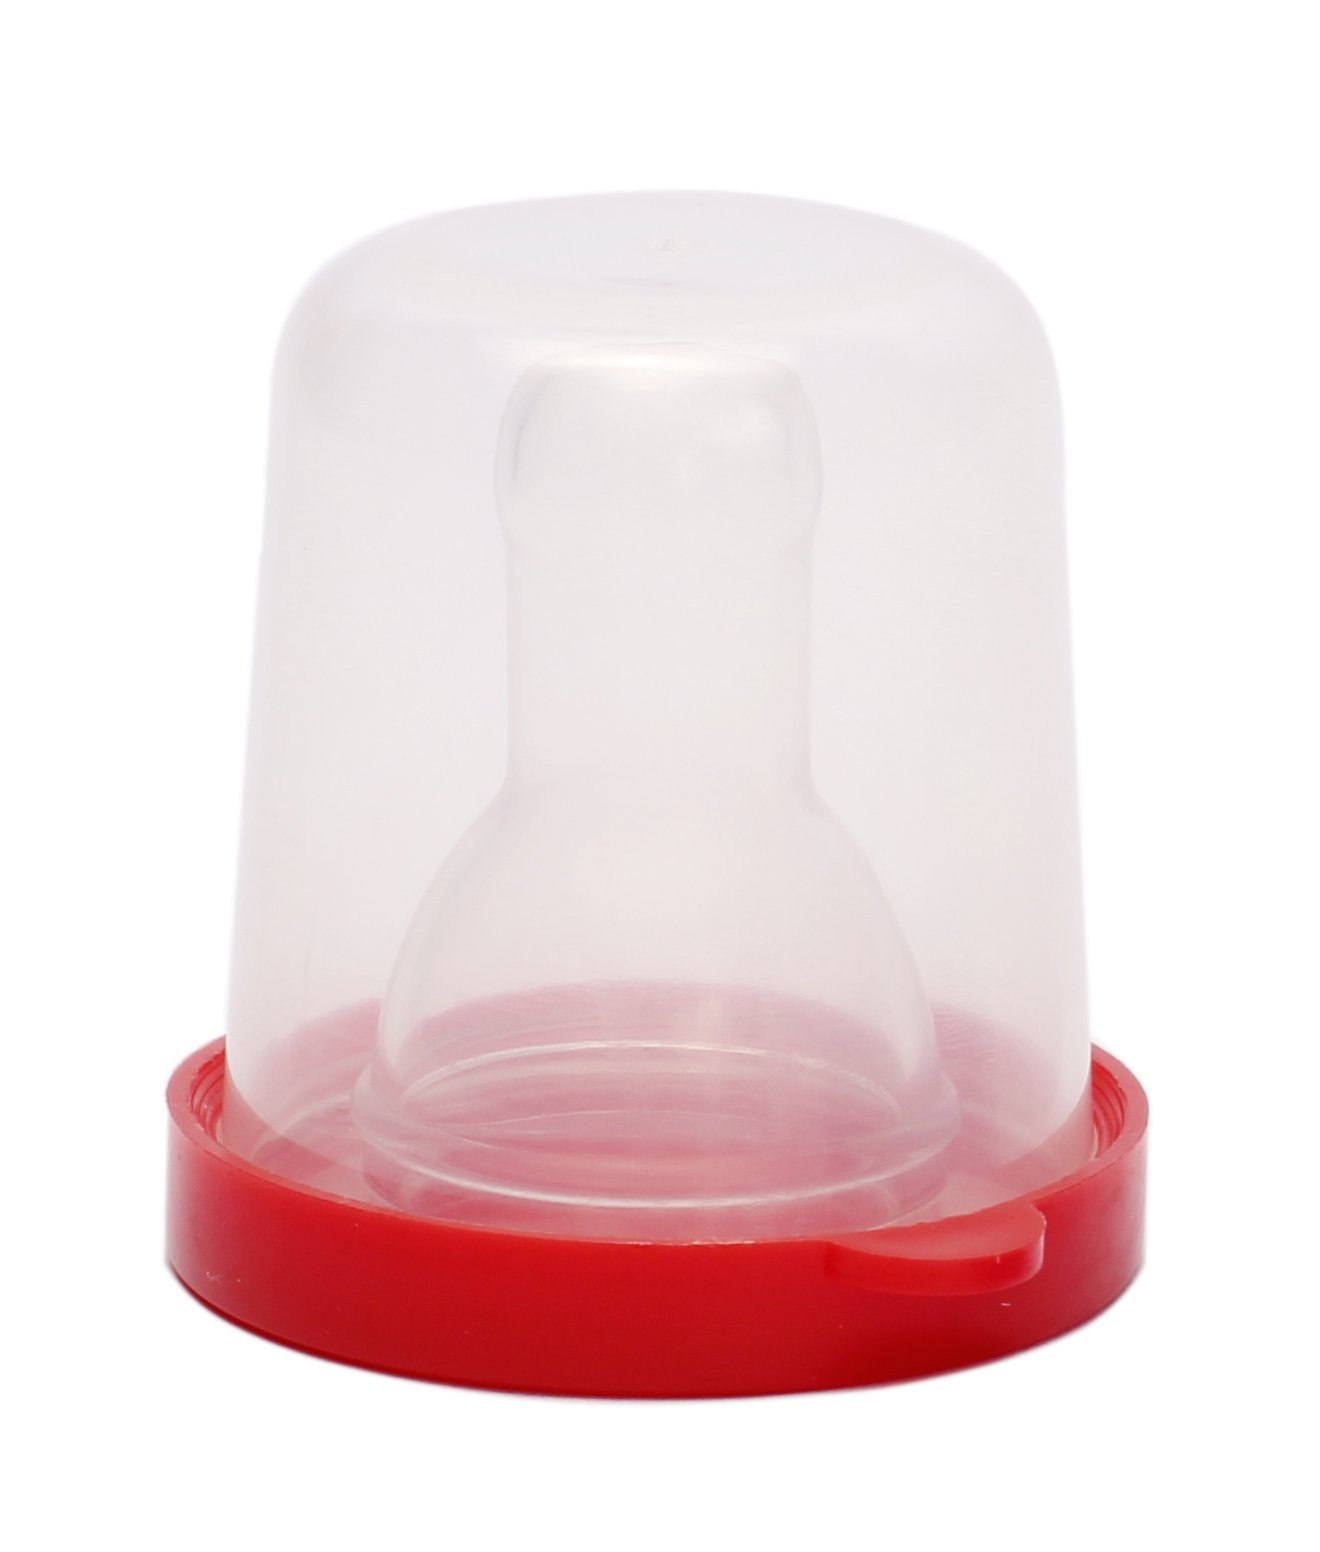 Соска силиконовая Курносики, круглая, в контейнере, размер L, от 6 мес., красный (7030 L) - фото 1